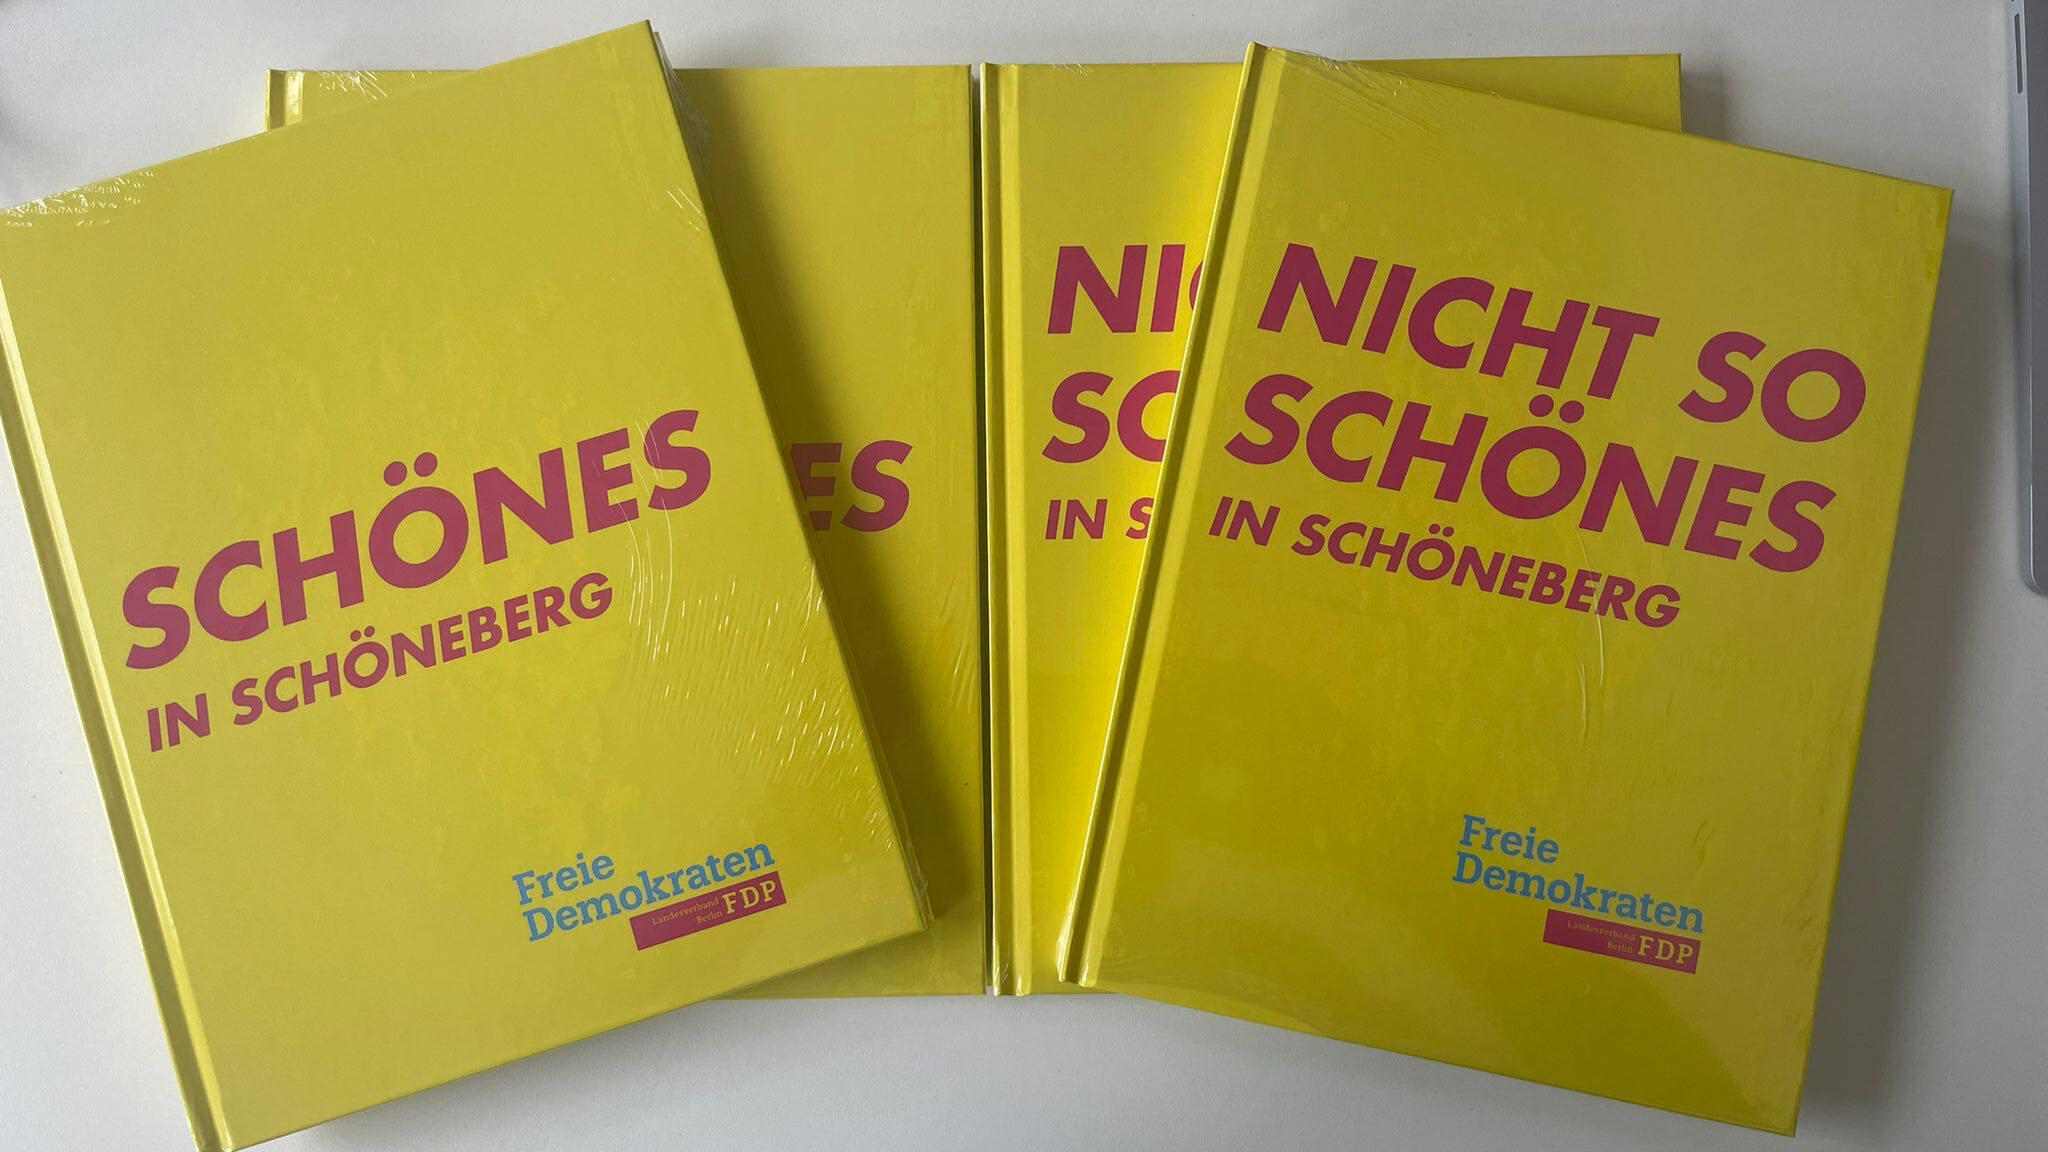 Auf dem Bild sind vier Notizbücher  zu sehen, beschriftet mit Schönes in Schöneberg und Nicht so Schönes in Schöneberg